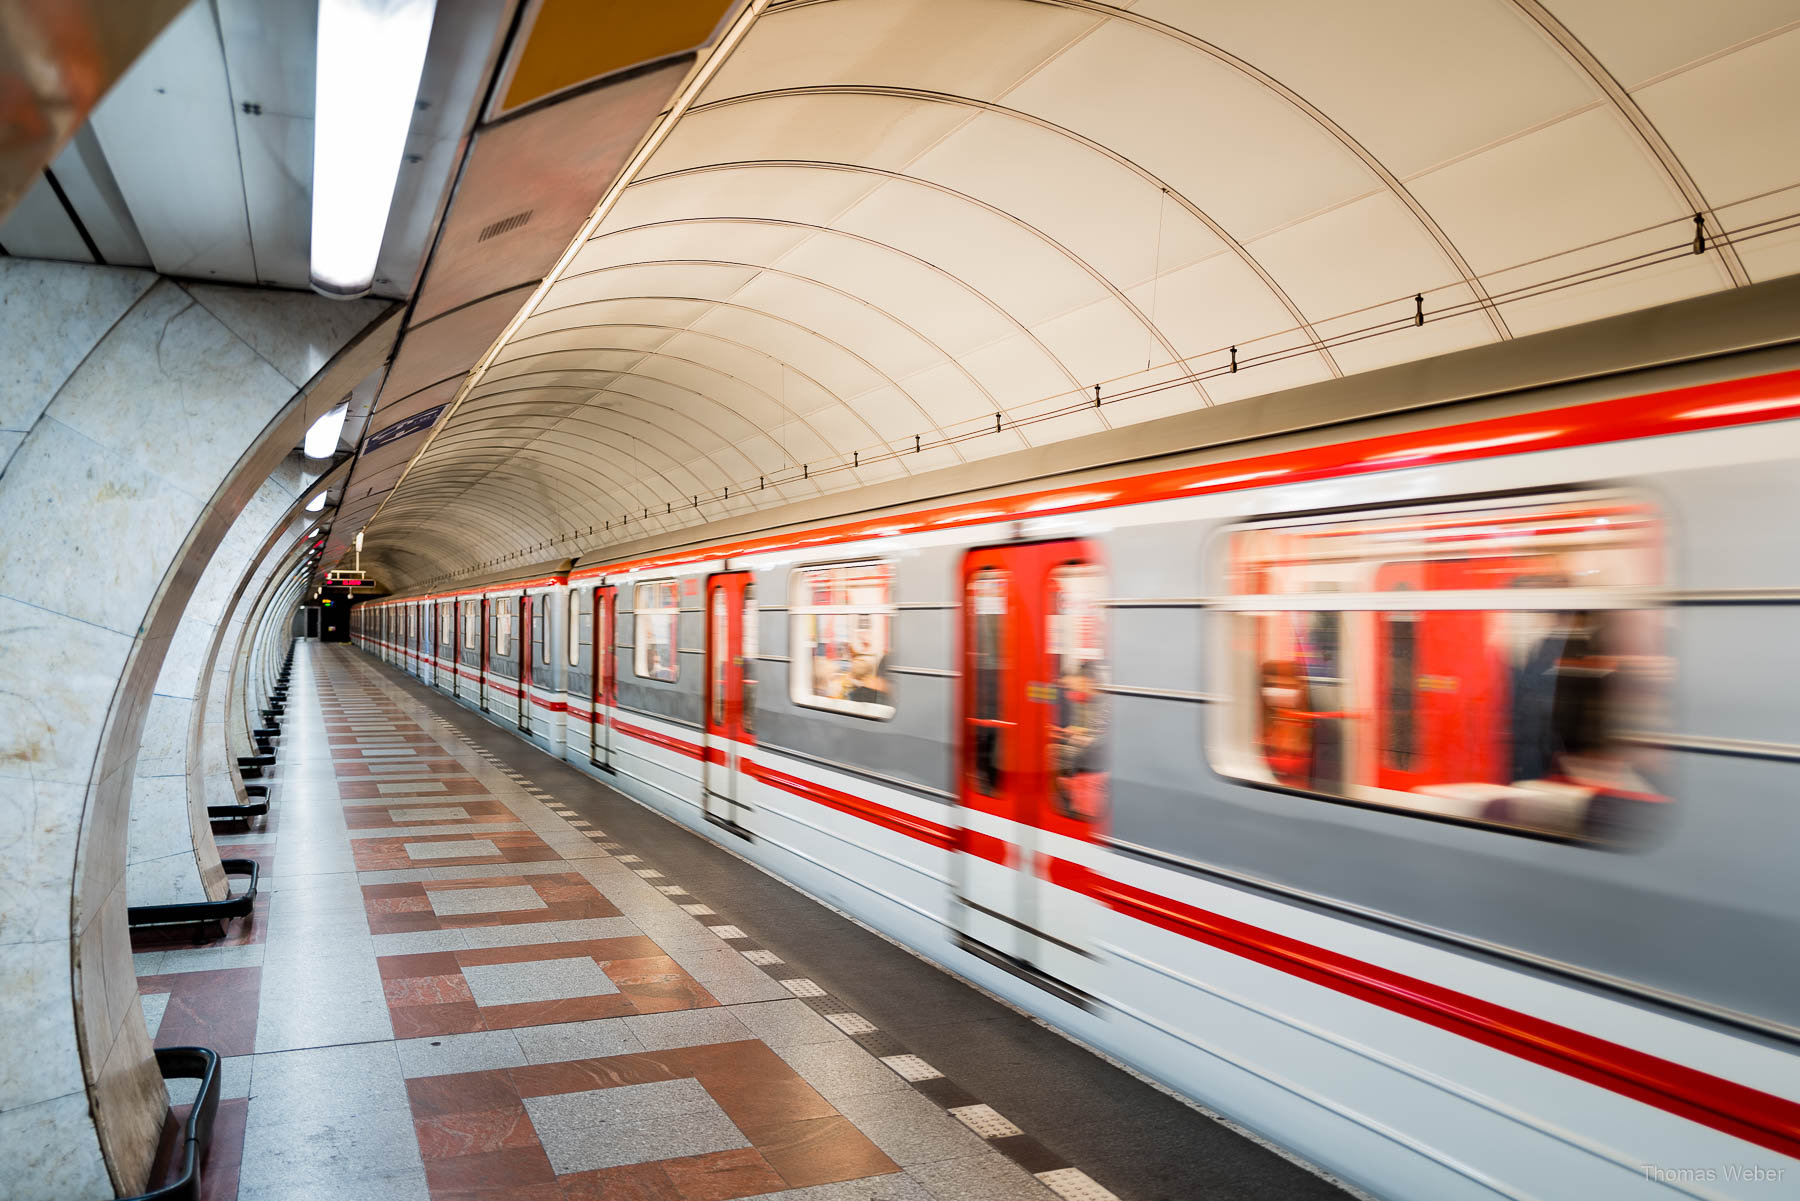 Faszinierende Prager Metrostationen und Rolltreppen, Thomas Weber, Fotograf aus Oldenburg